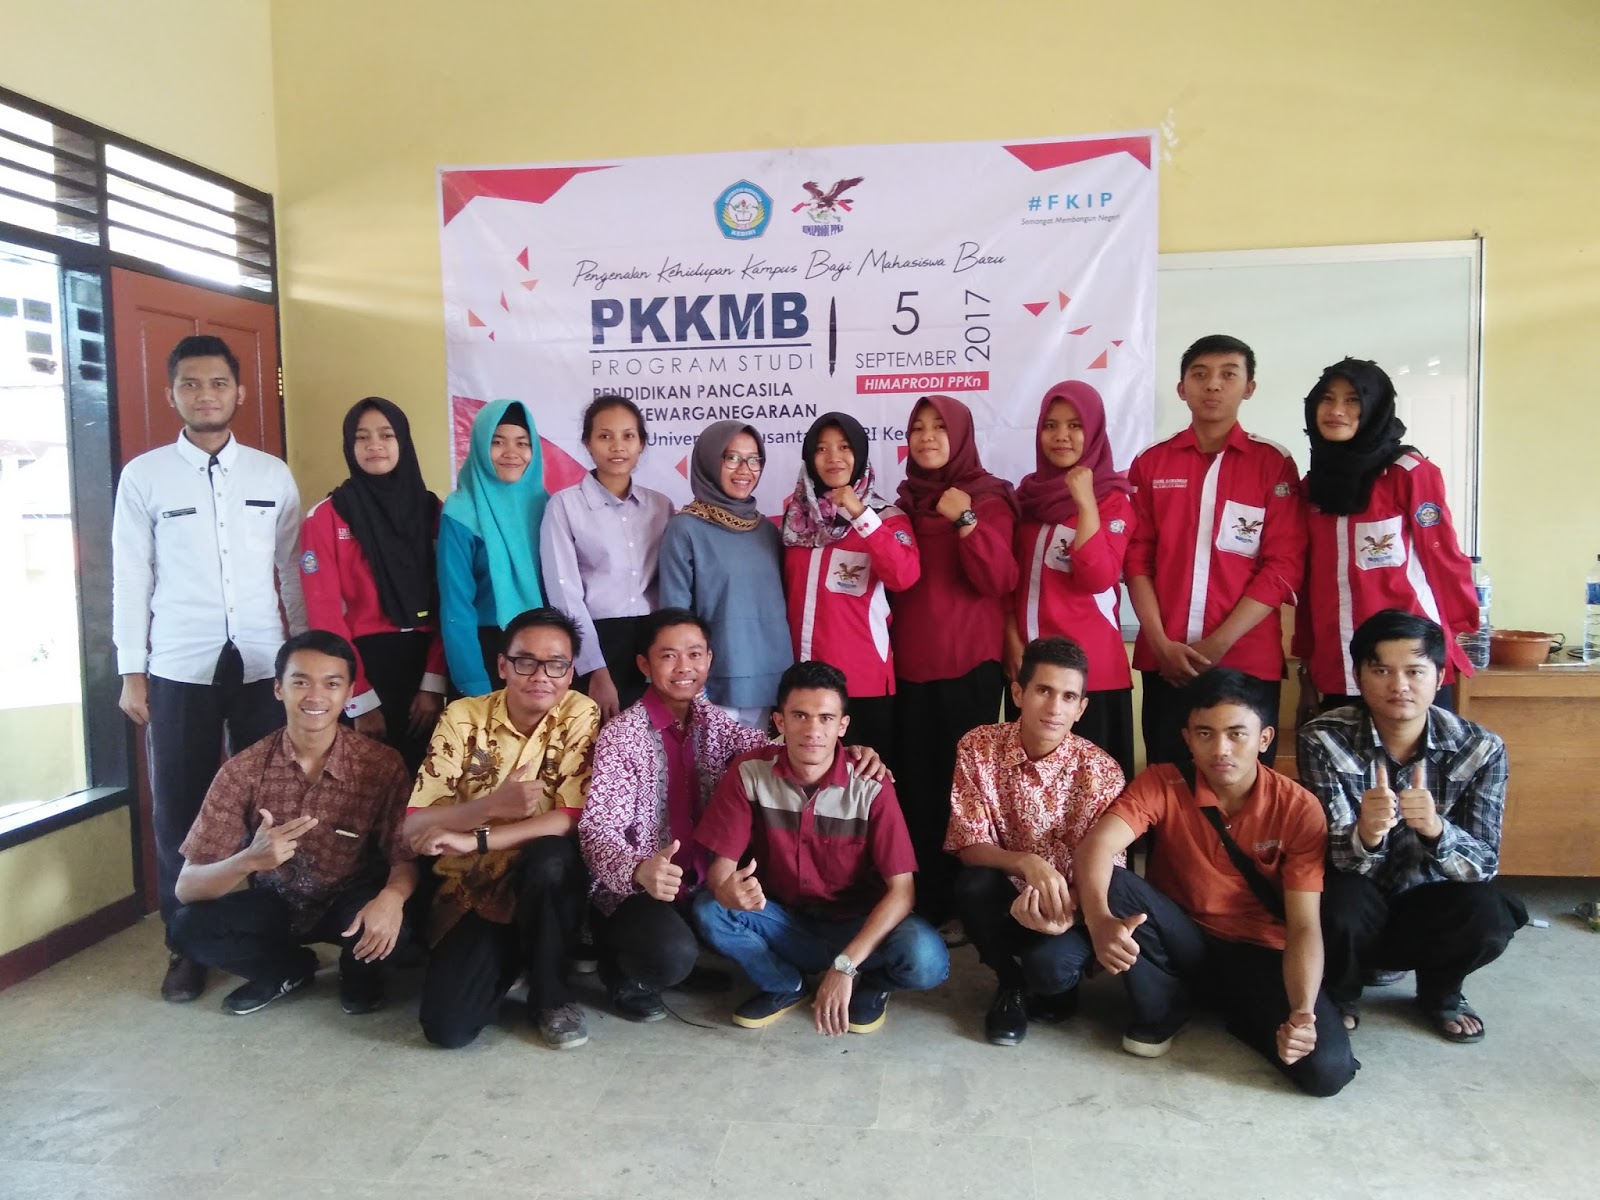 Selasa 05 September 2017 merupakan PKKMB yang diprakarsai oleh Himpunan Mahasiswa yang ada dilingkup Kampus Universitas Nusantara PGRI Kediri